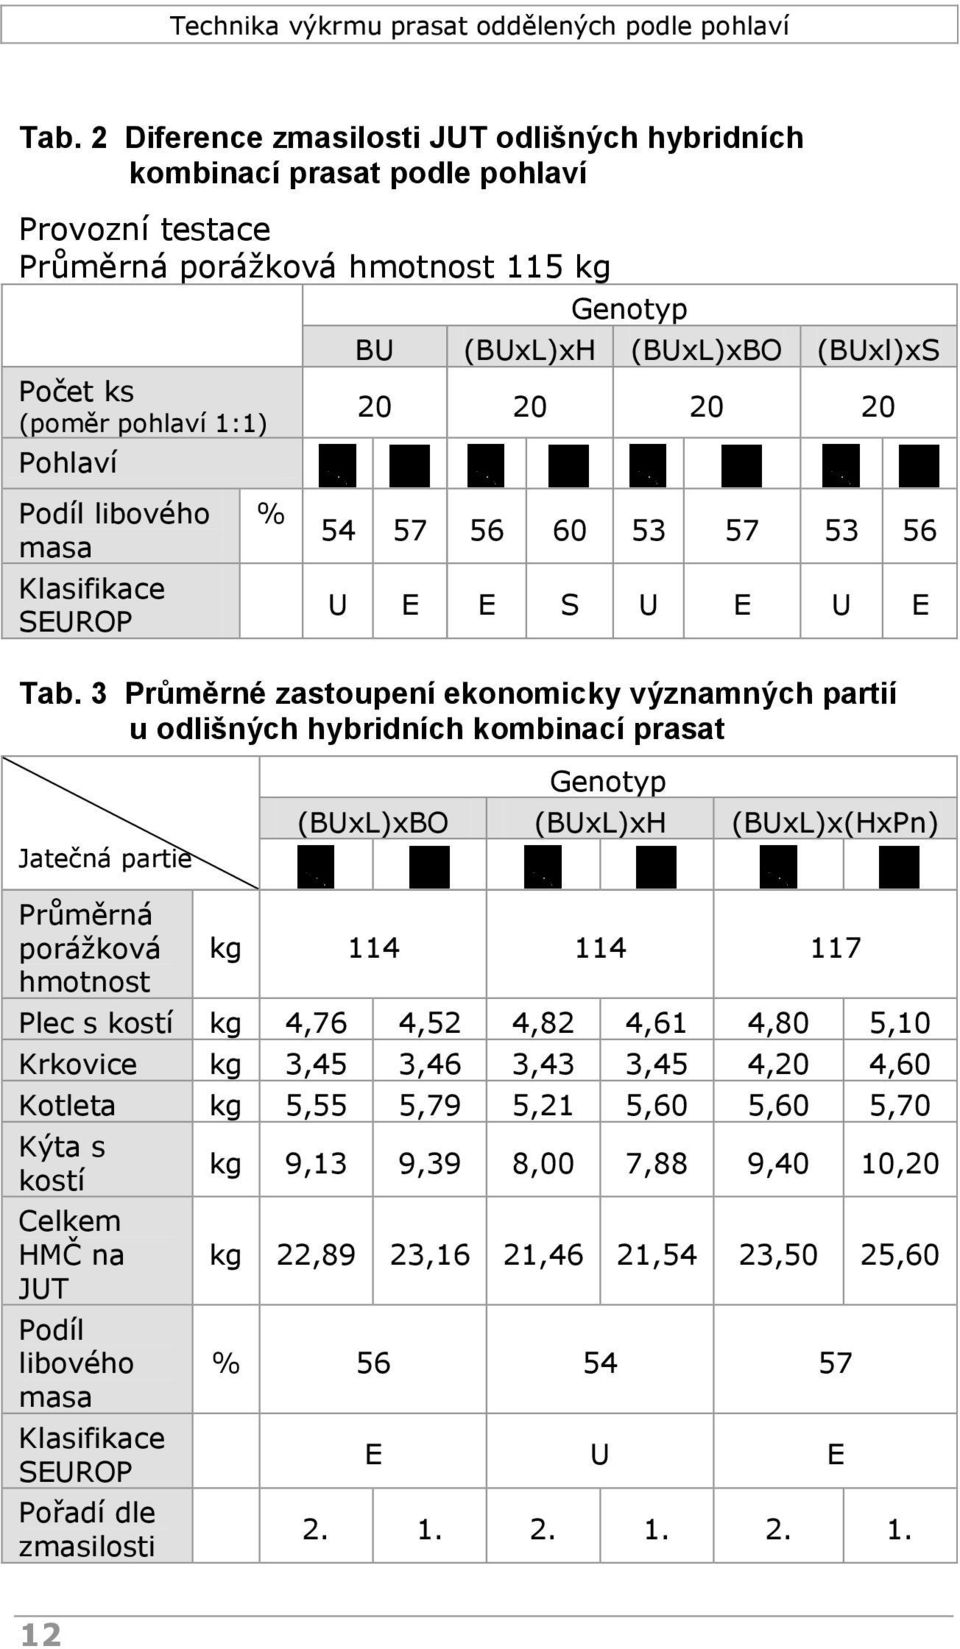 3 Průměrné zastoupení ekonomicky významných partií u odlišných hybridních kombinací prasat Jatečná partie Genotyp (BUxL)xBO (BUxL)xH (BUxL)x(HxPn) Průměrná porážková hmotnost kg 114 114 117 Plec s